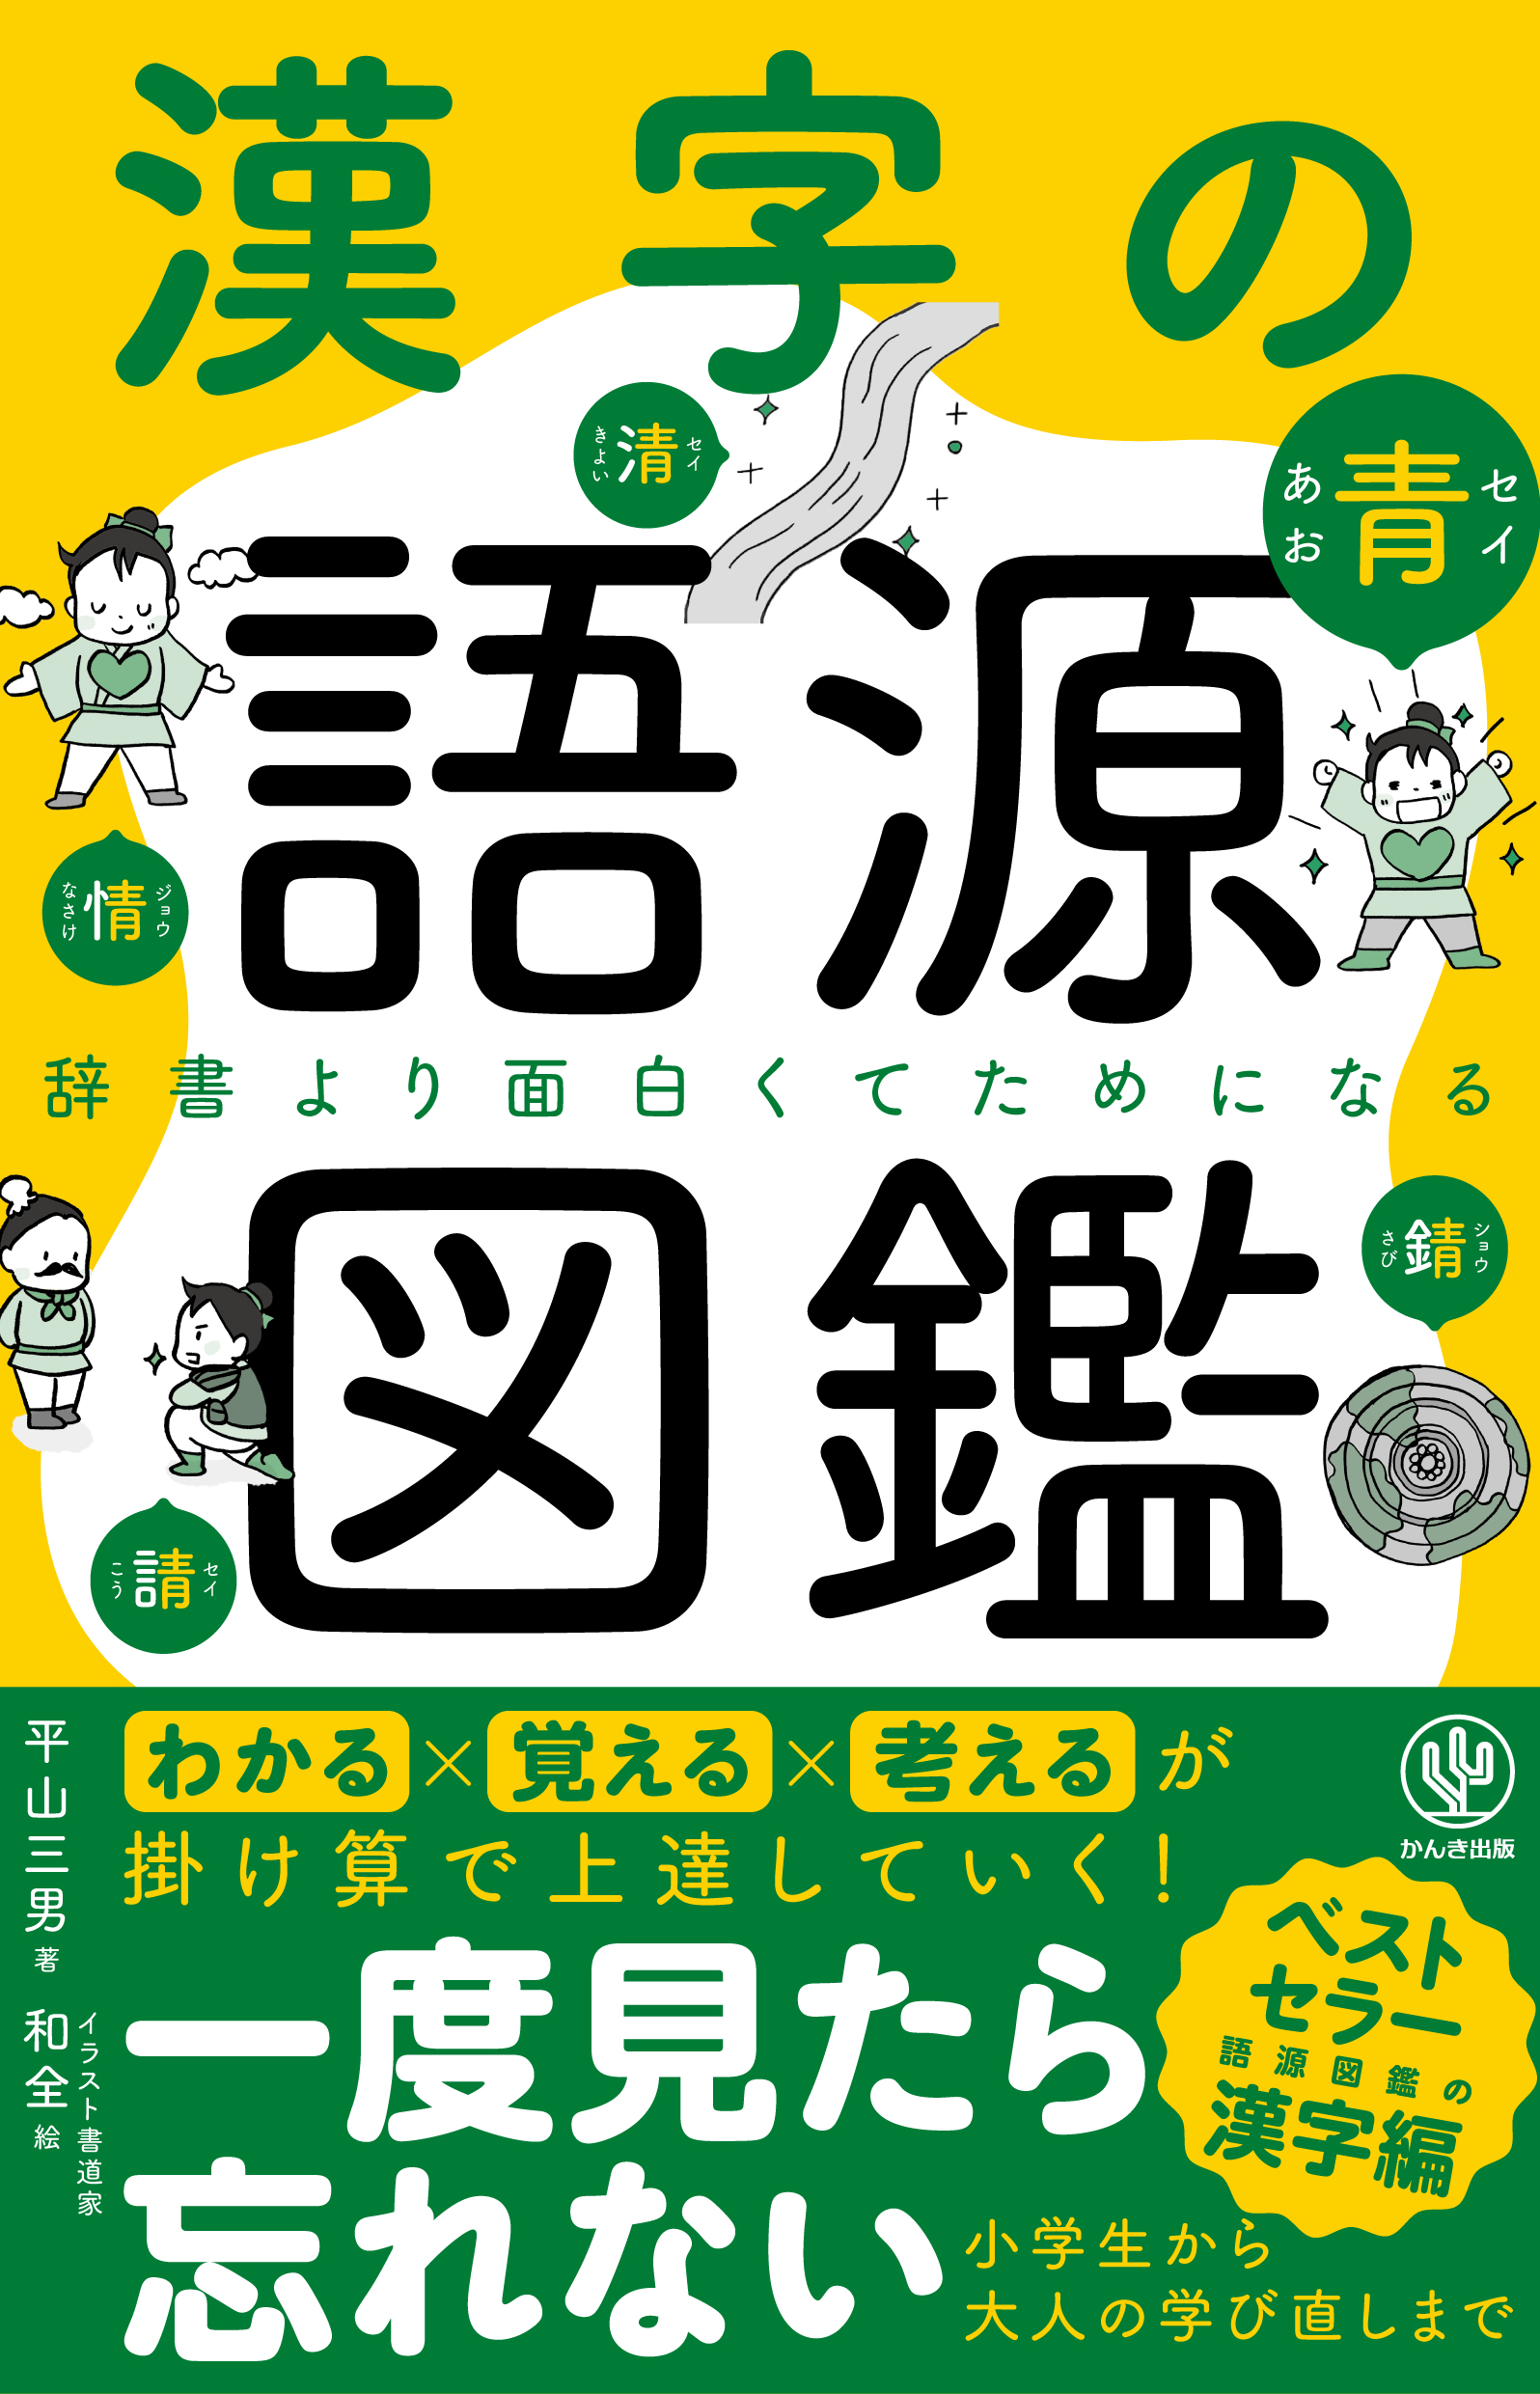 累計100万部を突破した大人気 語源図鑑 シリーズから ついに 漢字の語源図鑑 が登場 イラストでわかりやすく簡単に 知らない漢字も芋づる式に覚えられます Sankeibiz サンケイビズ 自分を磨く経済情報サイト